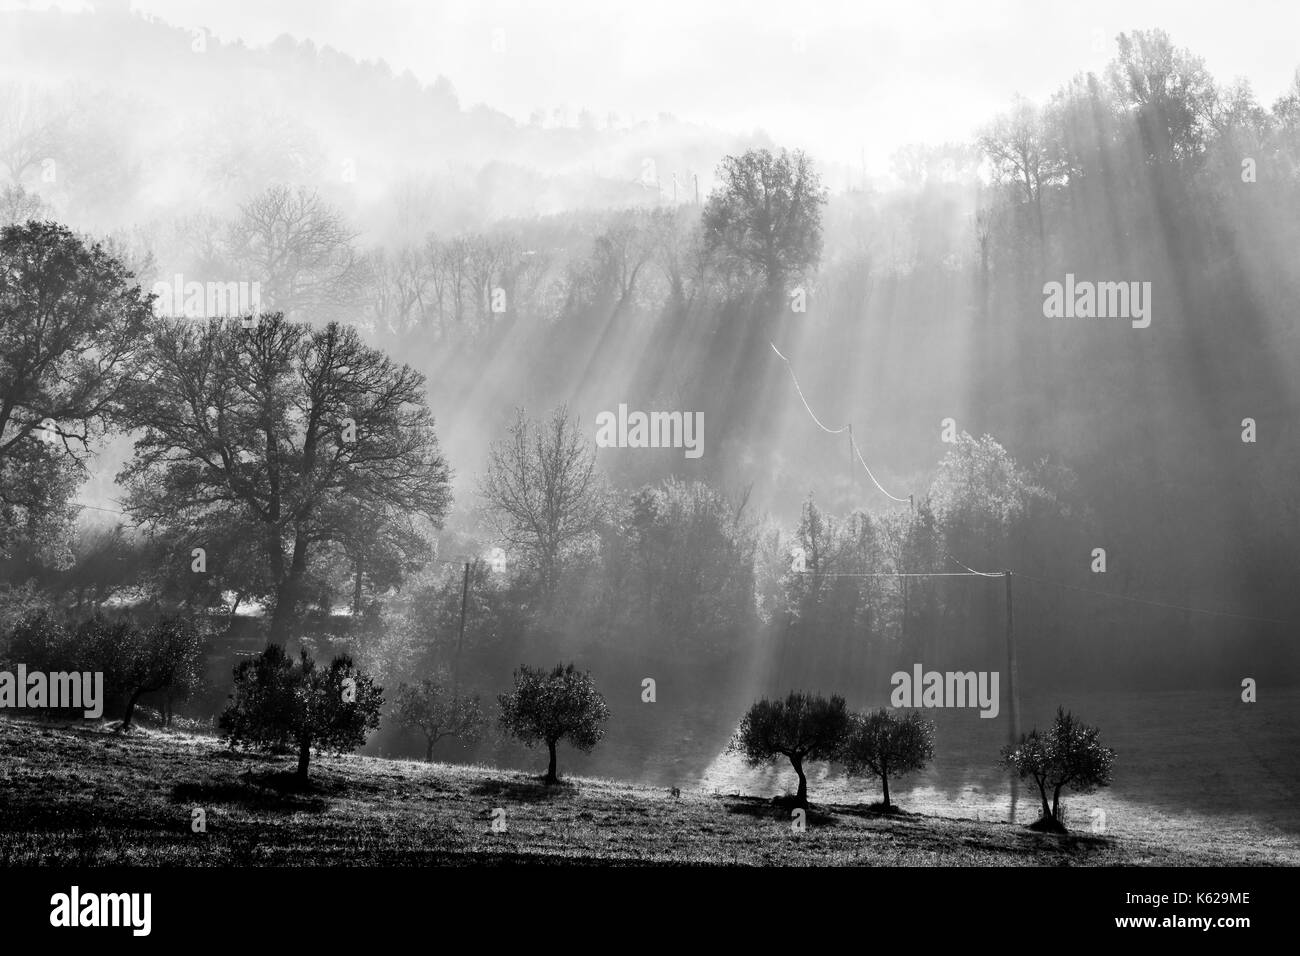 Potenti raggi di sole taglio attraverso la nebbia e proiettare ombre di alberi, con alcune altre piante in primo piano Foto Stock